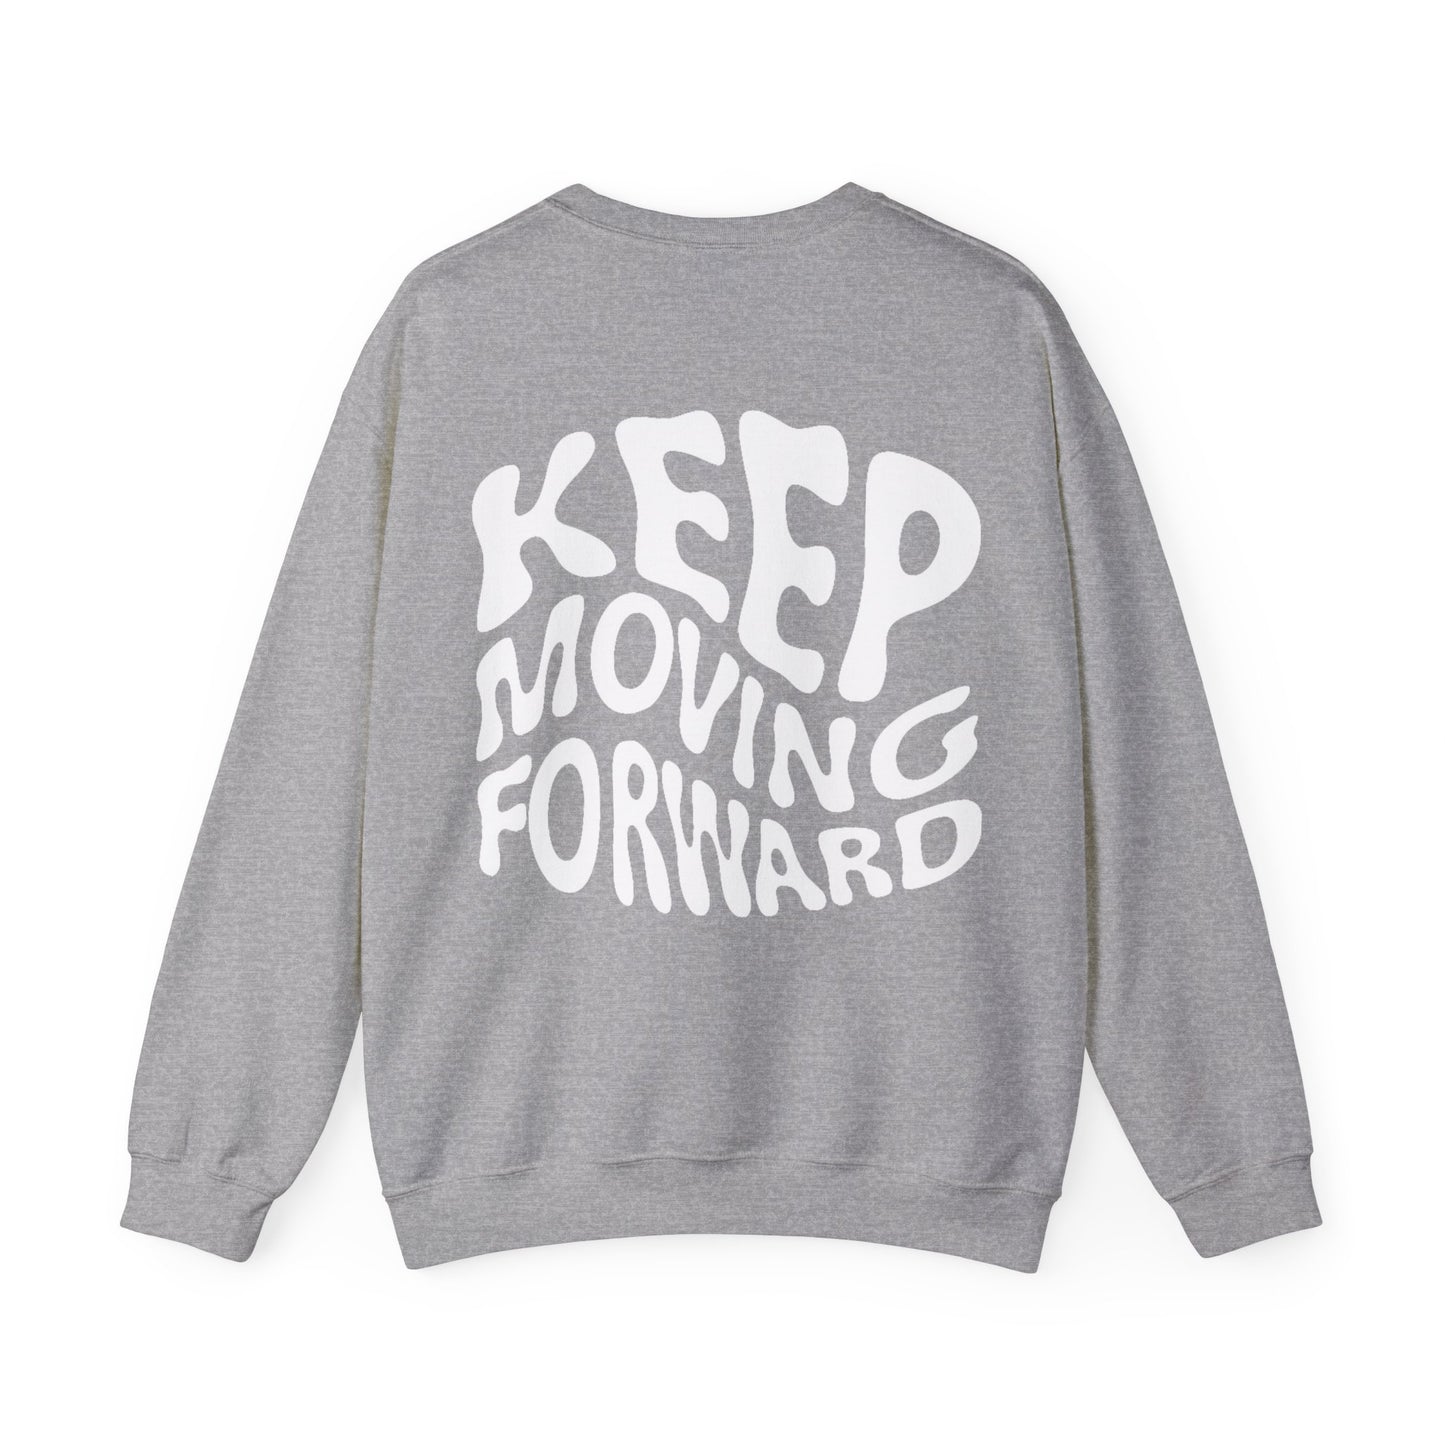 *Keep Moving Forward* $WEATSHIRT